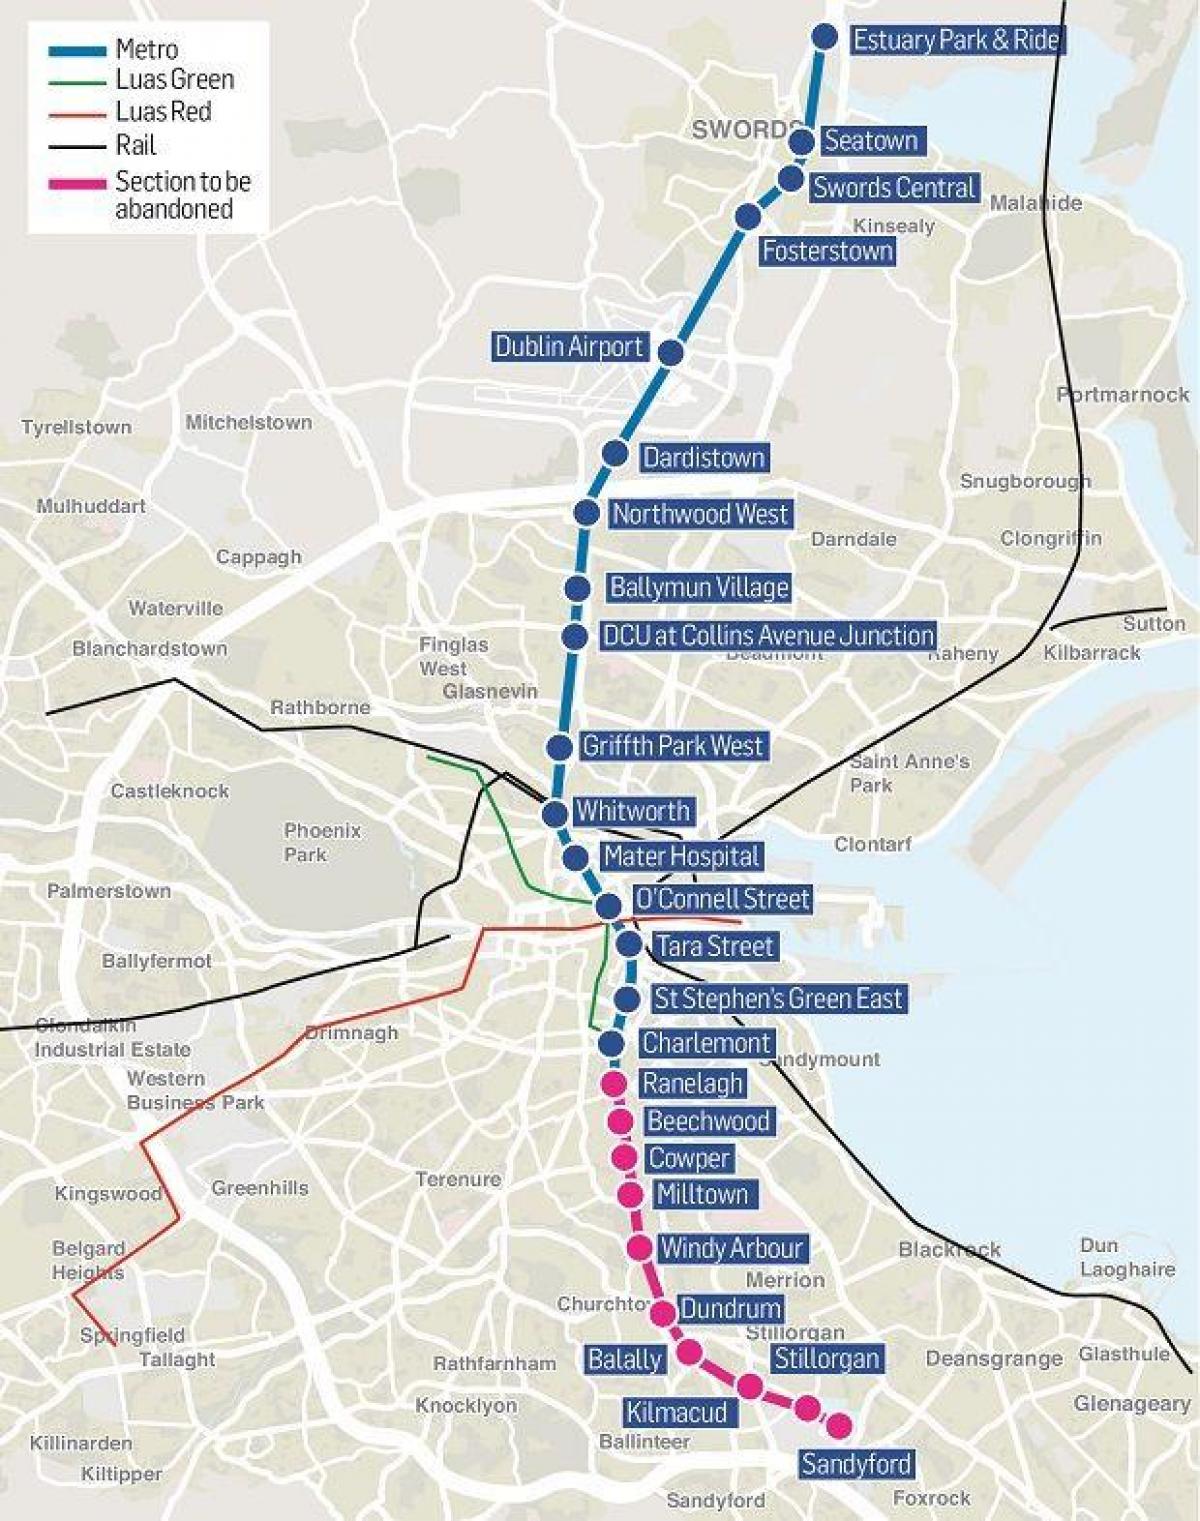 Mappa delle stazioni della metropolitana di Dublino